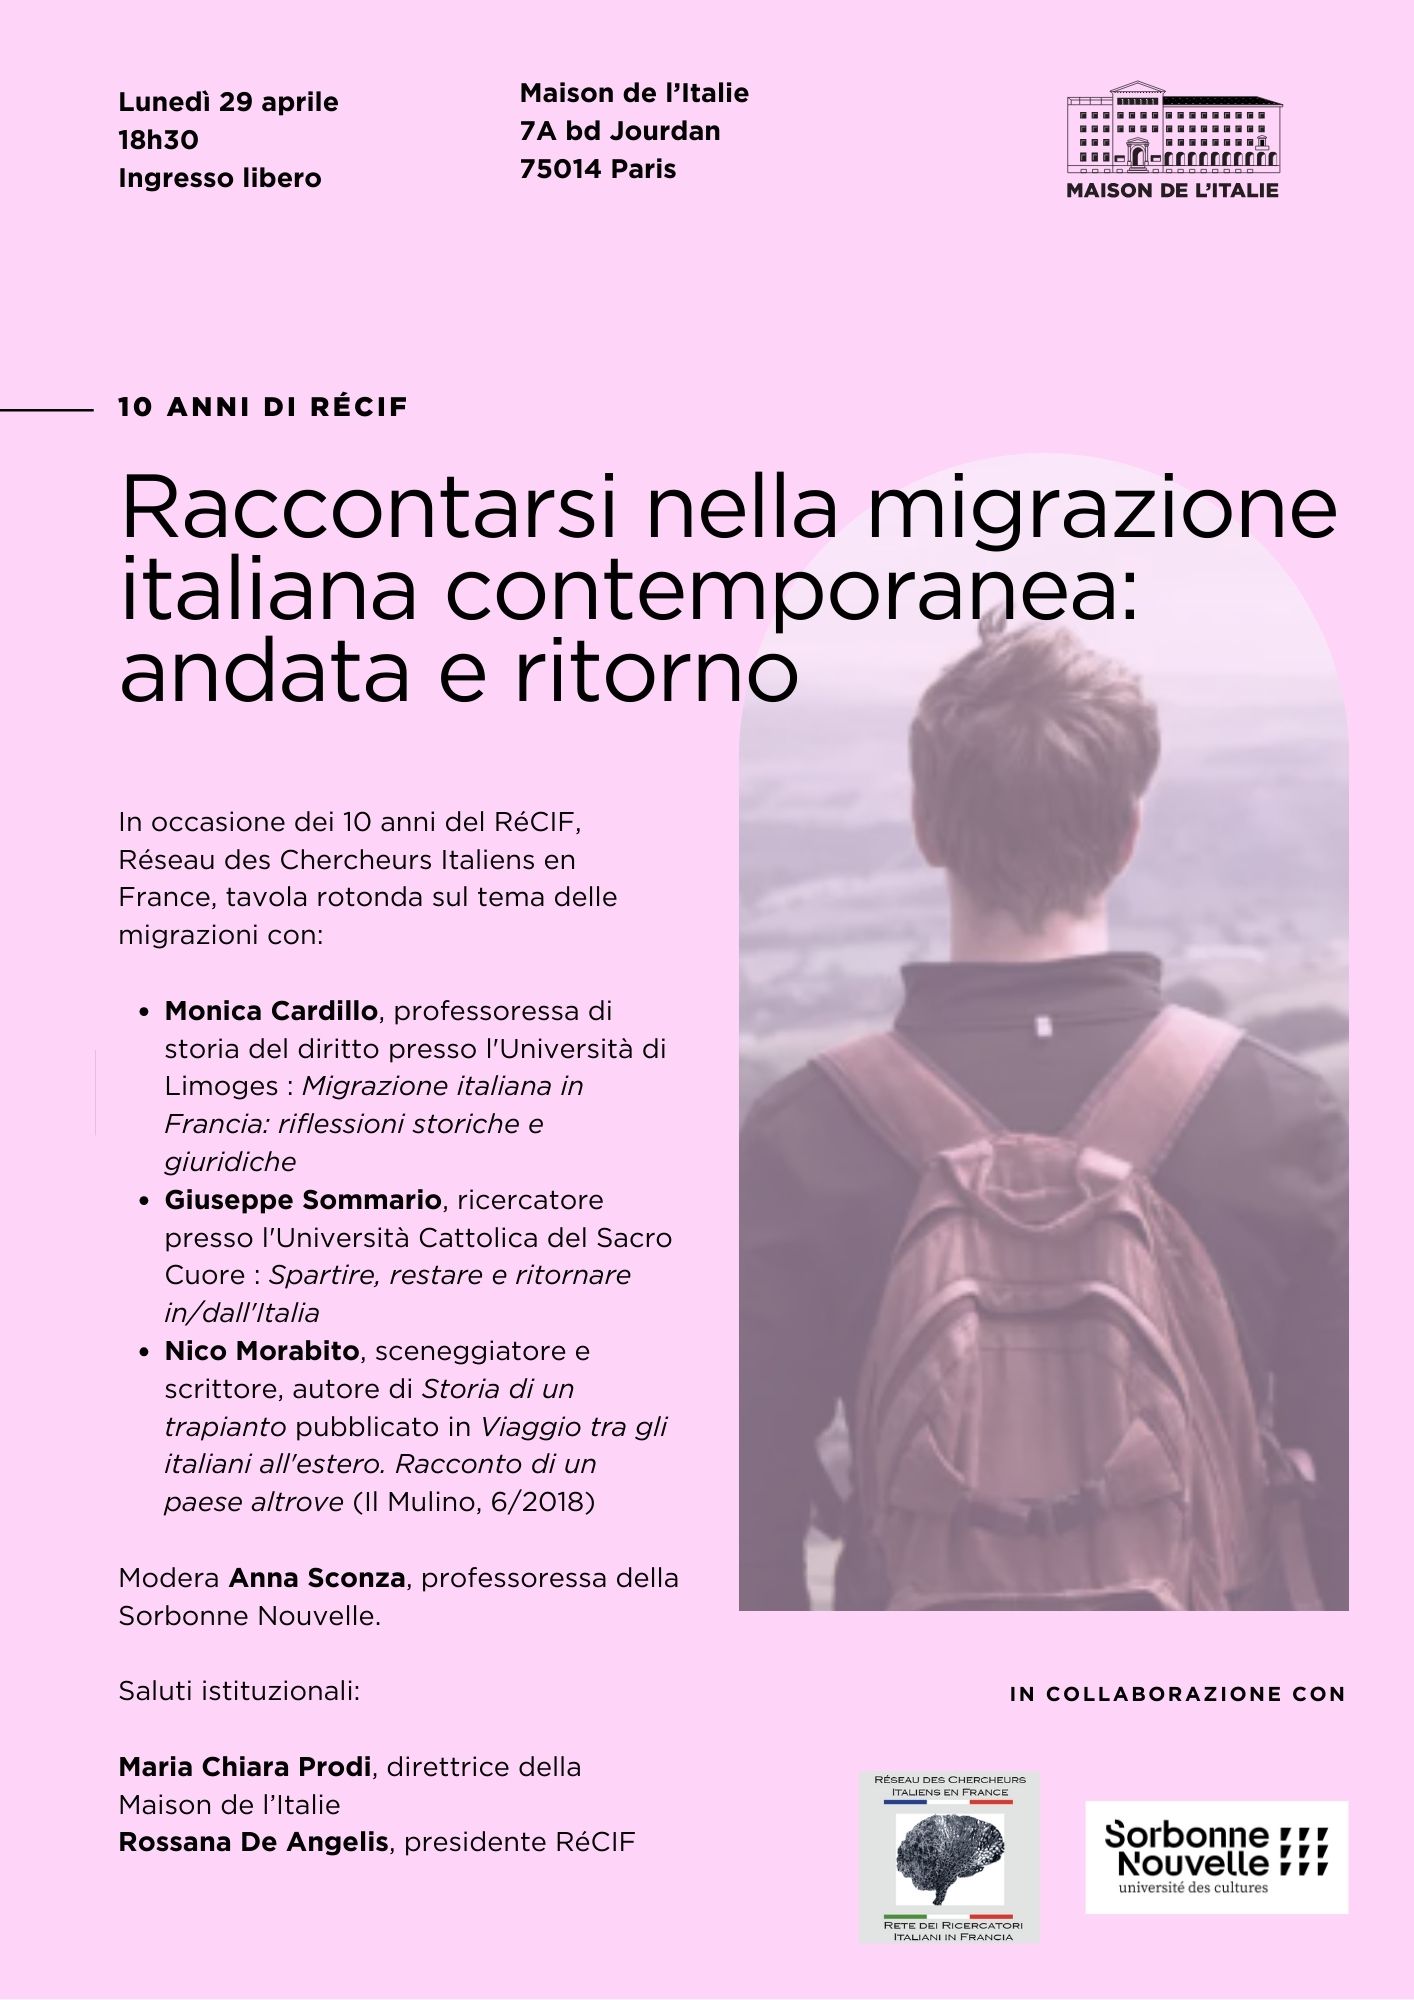 Raccontarsi nella migrazione italiana contemporanea: andata e ritorno